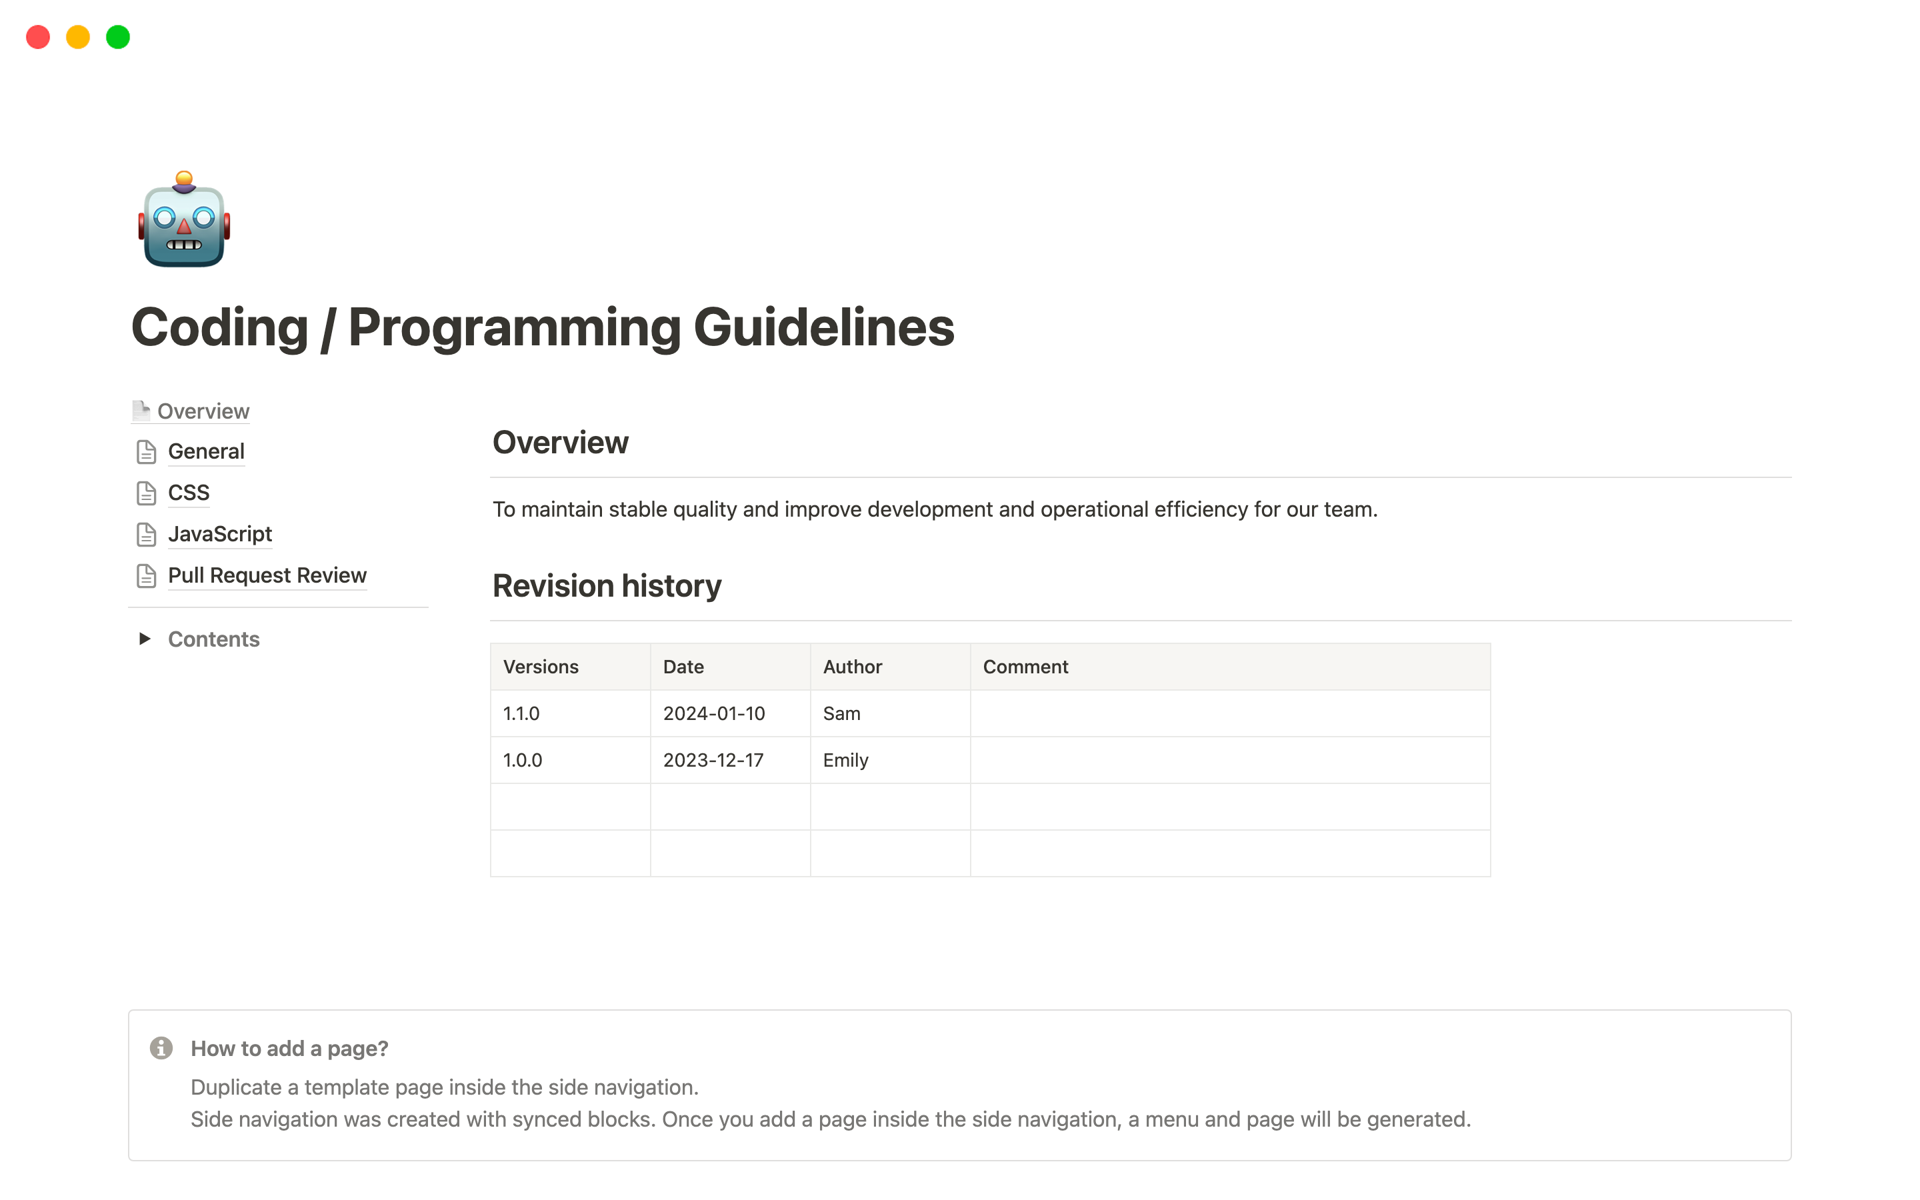 Vista previa de una plantilla para Coding / Programming Guidelines